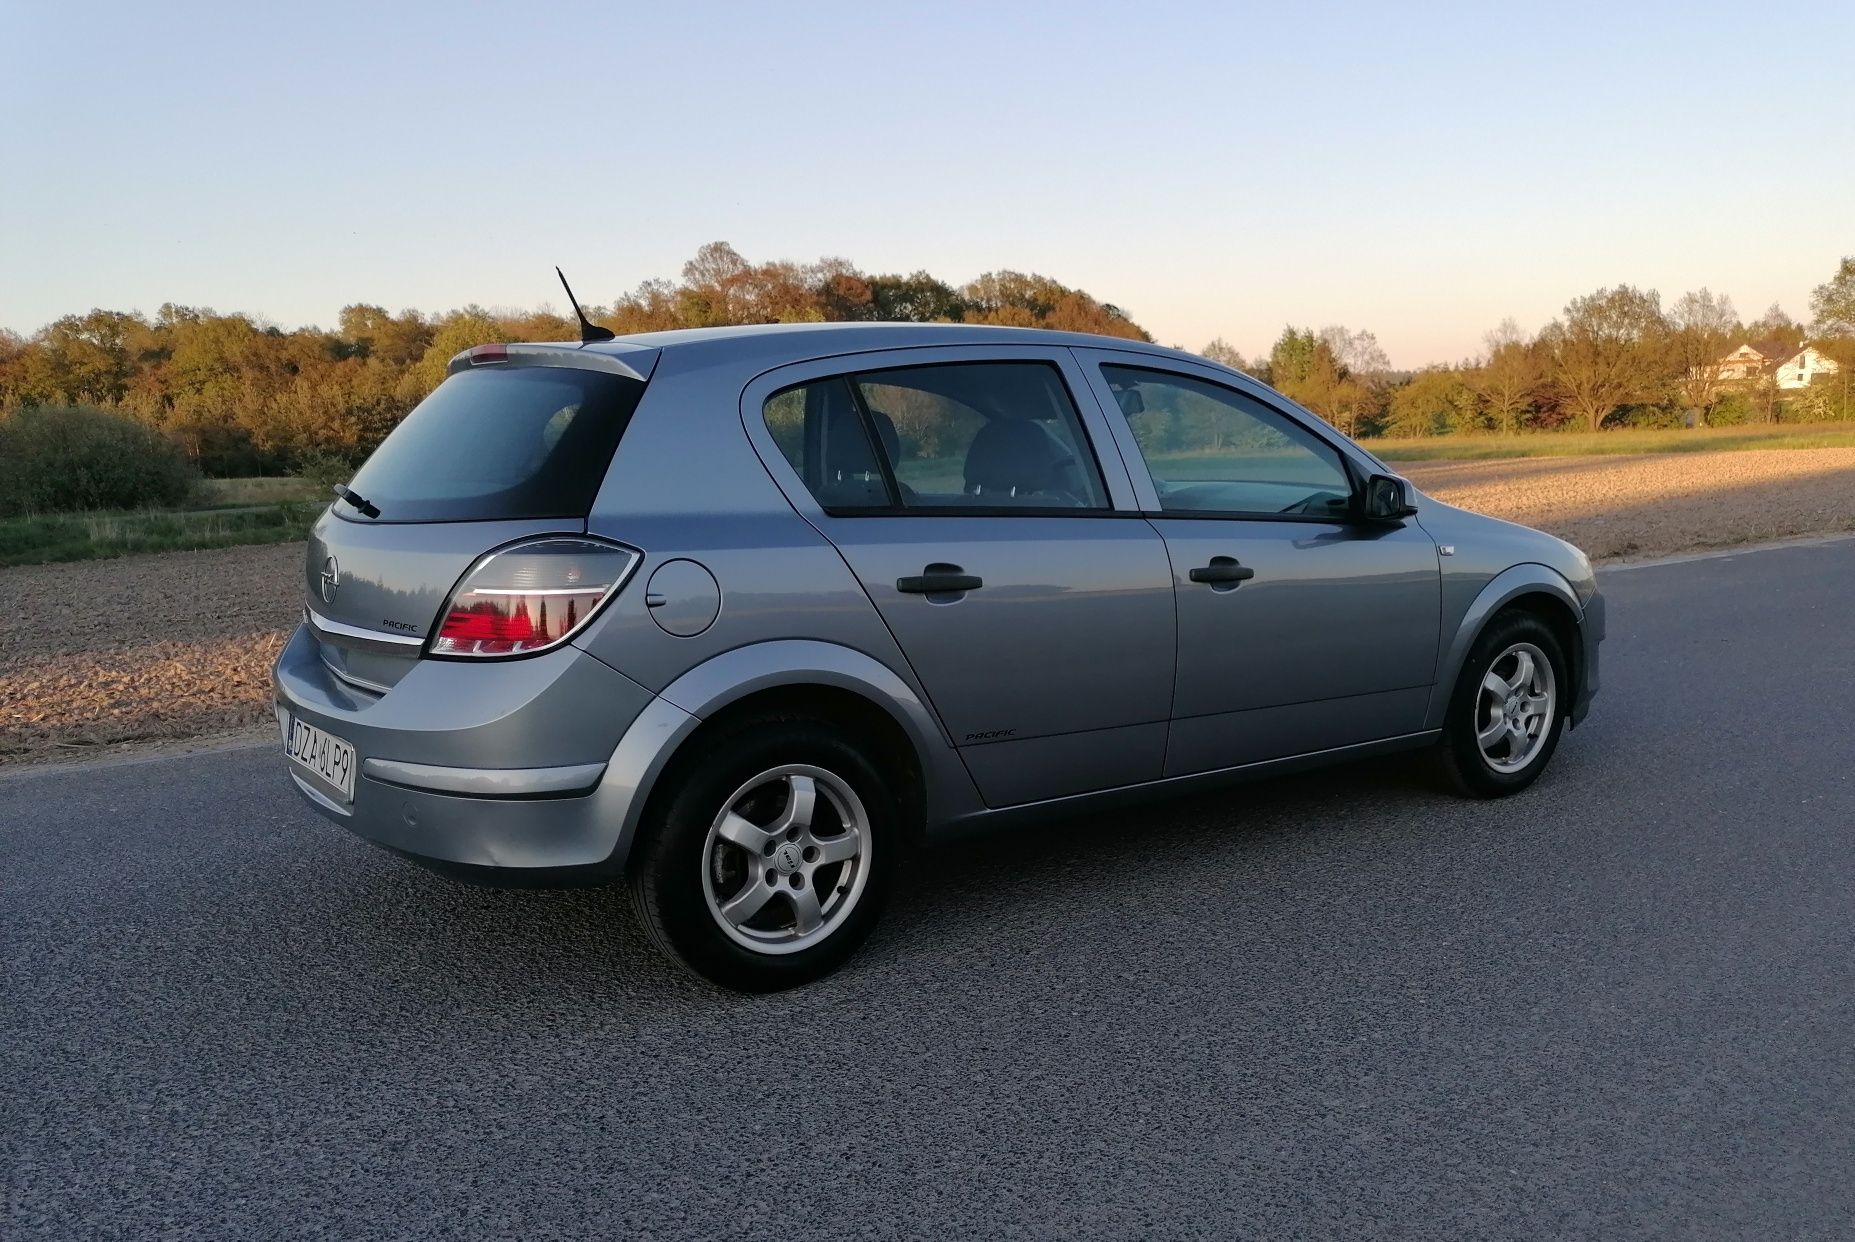 Opel Astra H 1.6l 115km